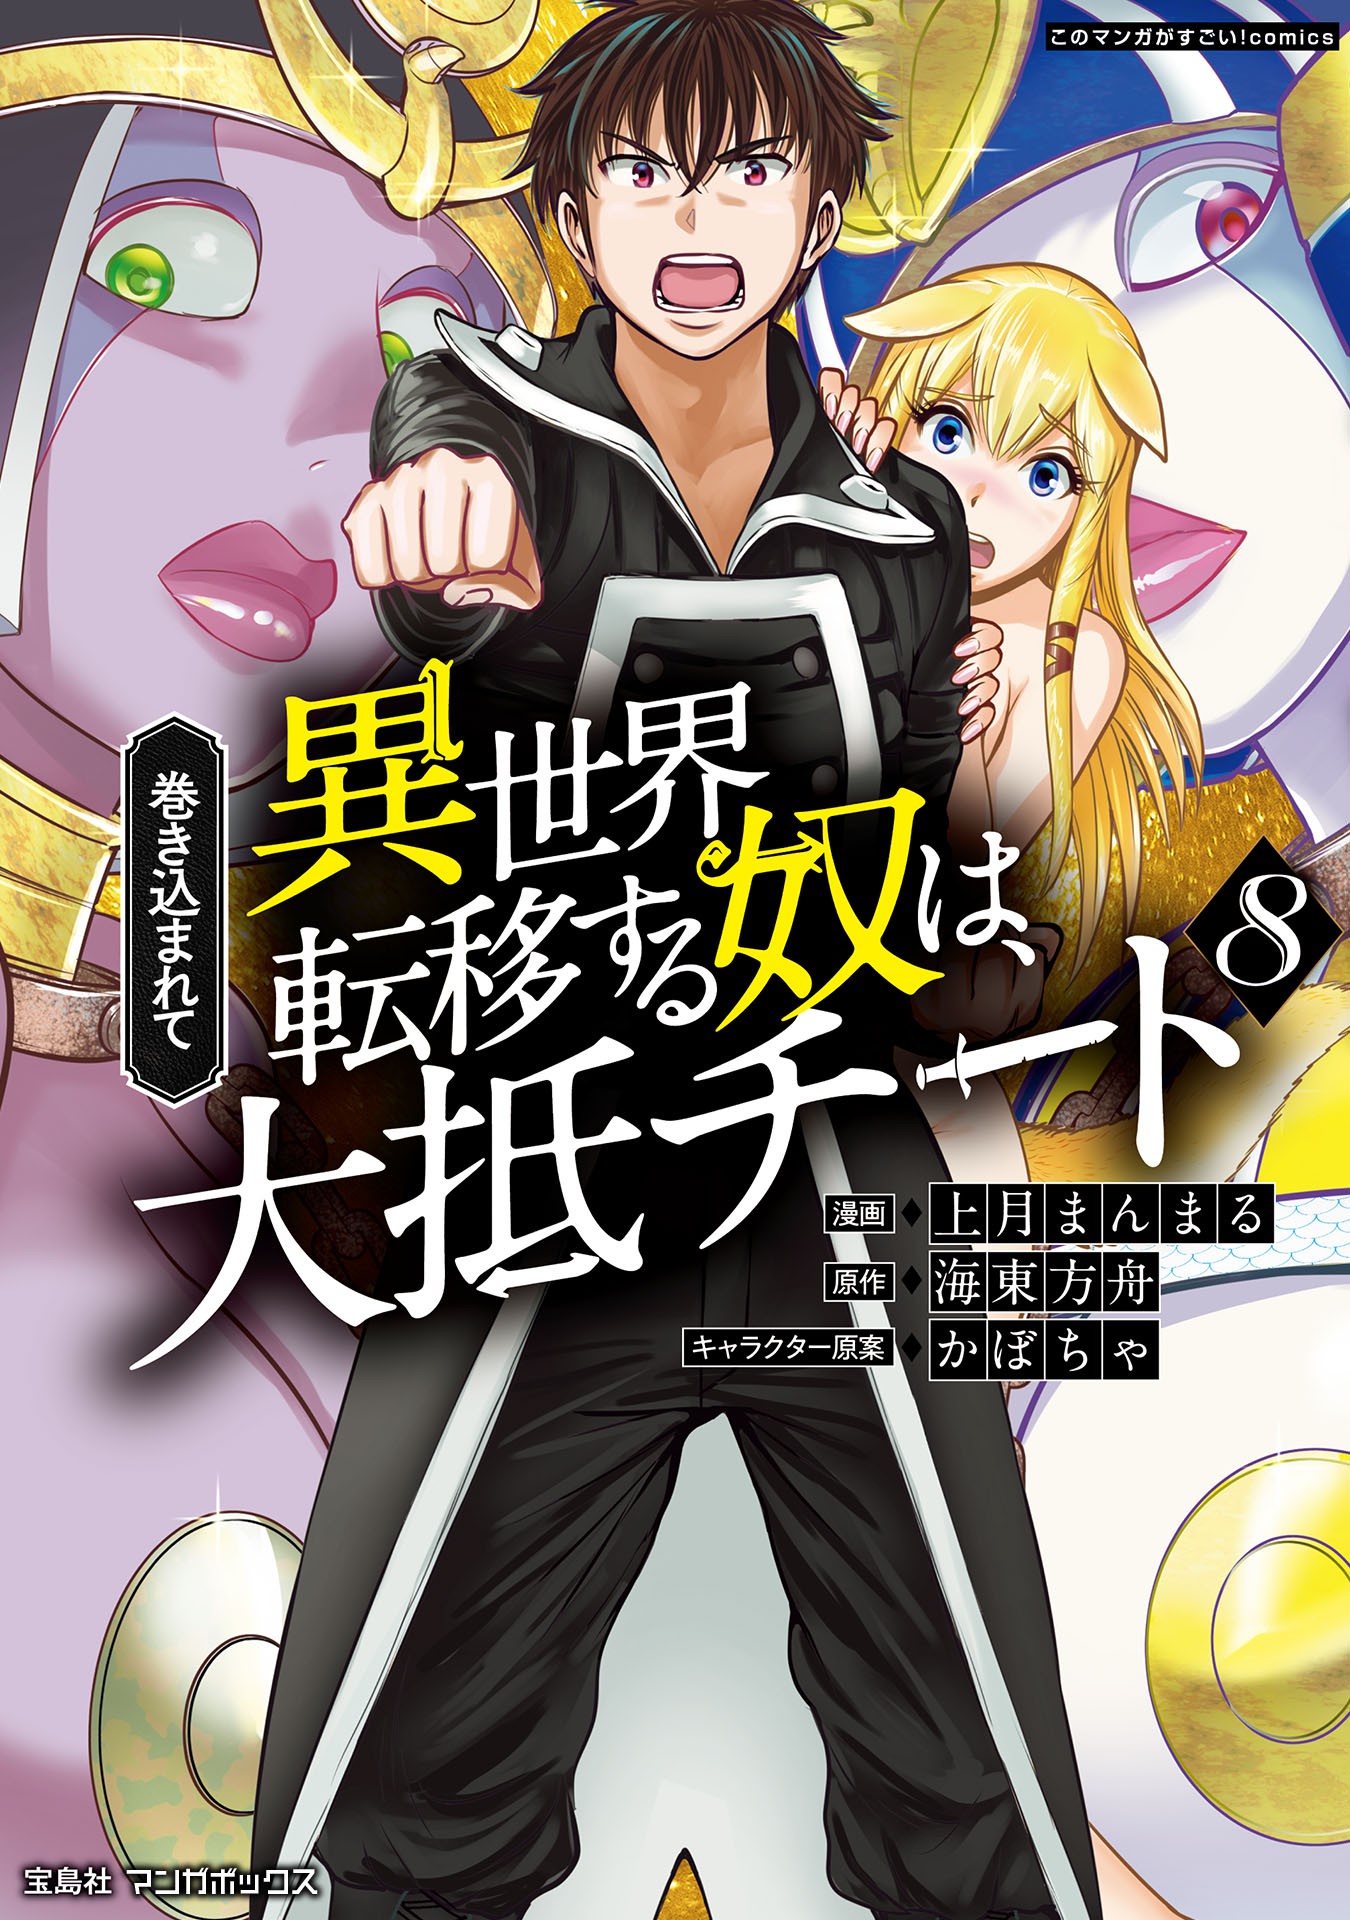 Isekai Cheat Magician (Episode 9) – Taichi of the Rebellion – Umai Yomu  Anime Blog